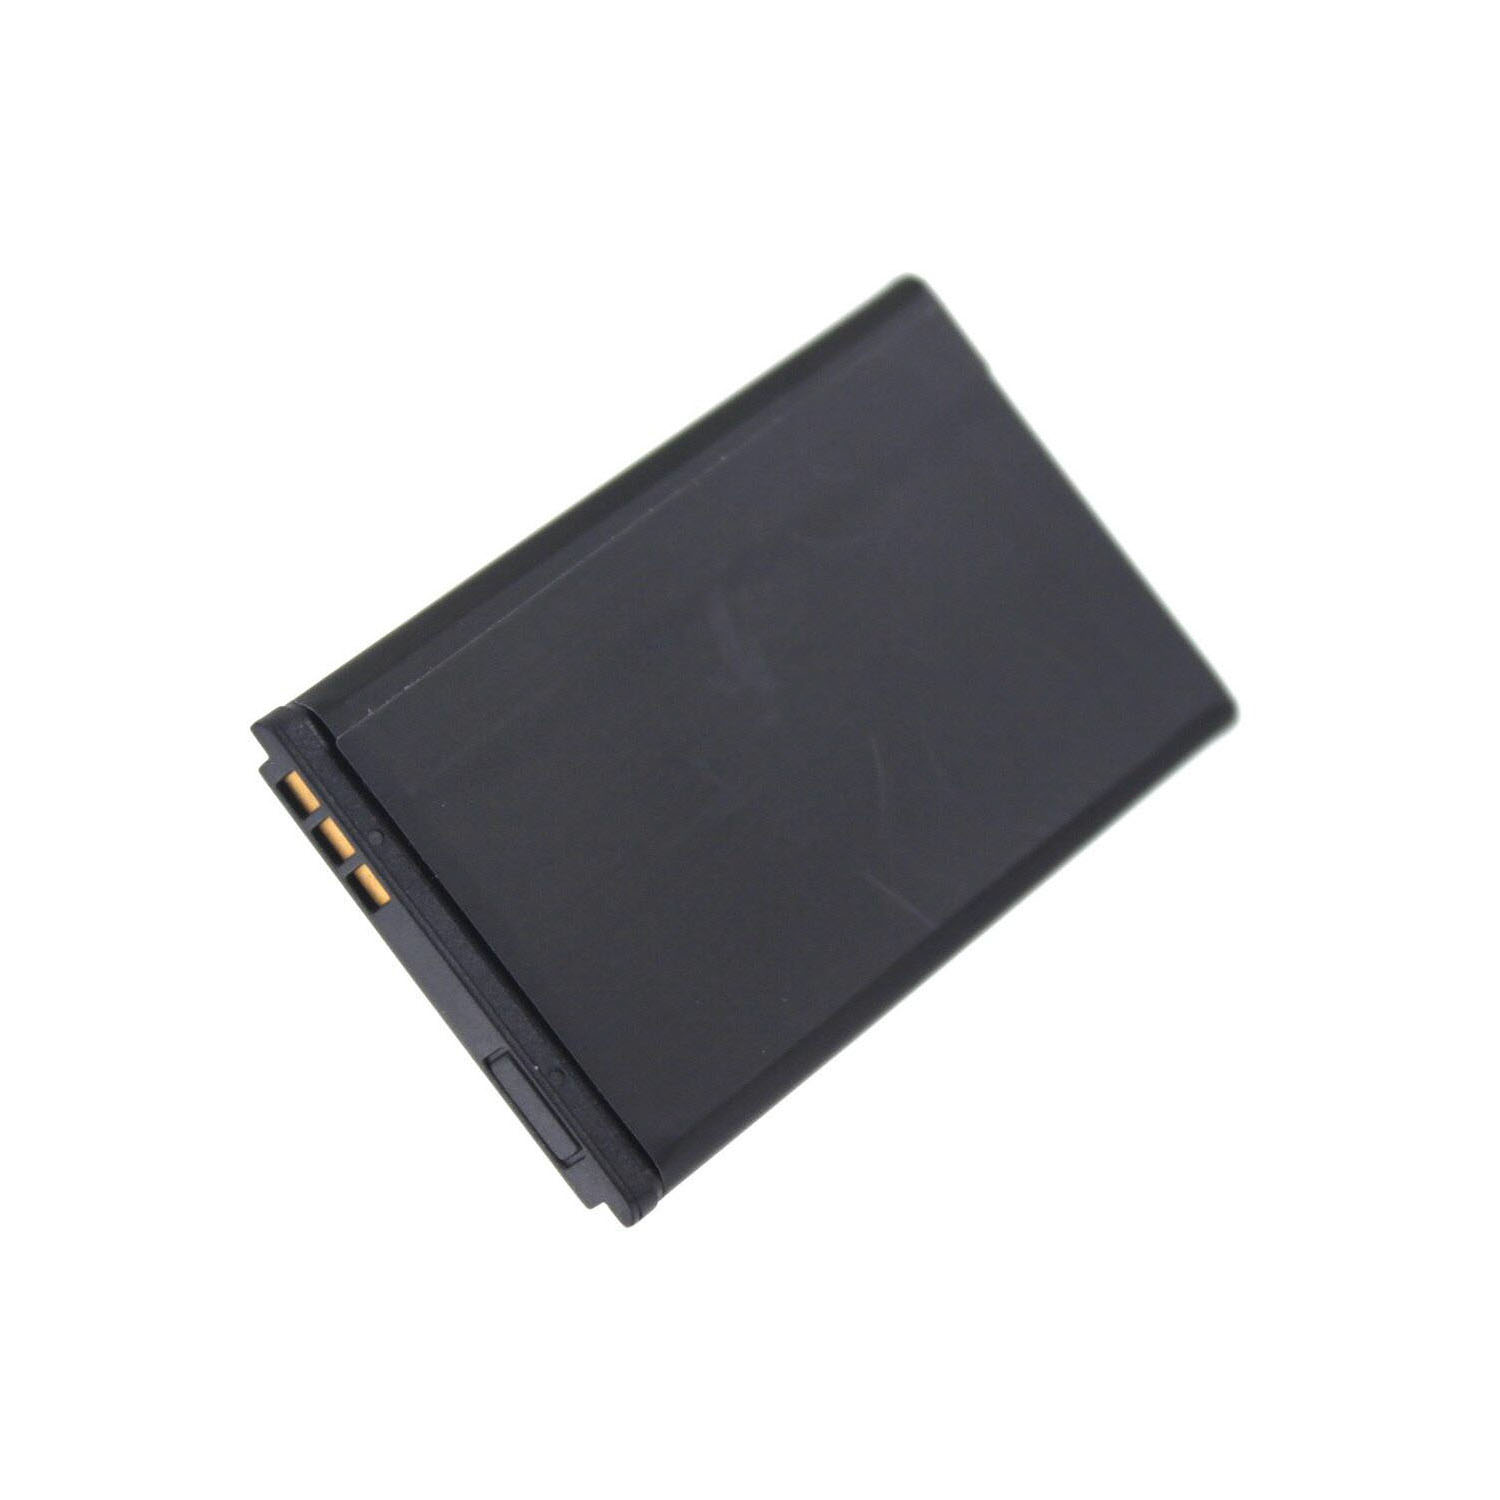 AGI Akku kompatibel mit Olympia Bella Li-Pol, Handy-/Smartphoneakku, Volt, Li-Pol mAh 750 3.7